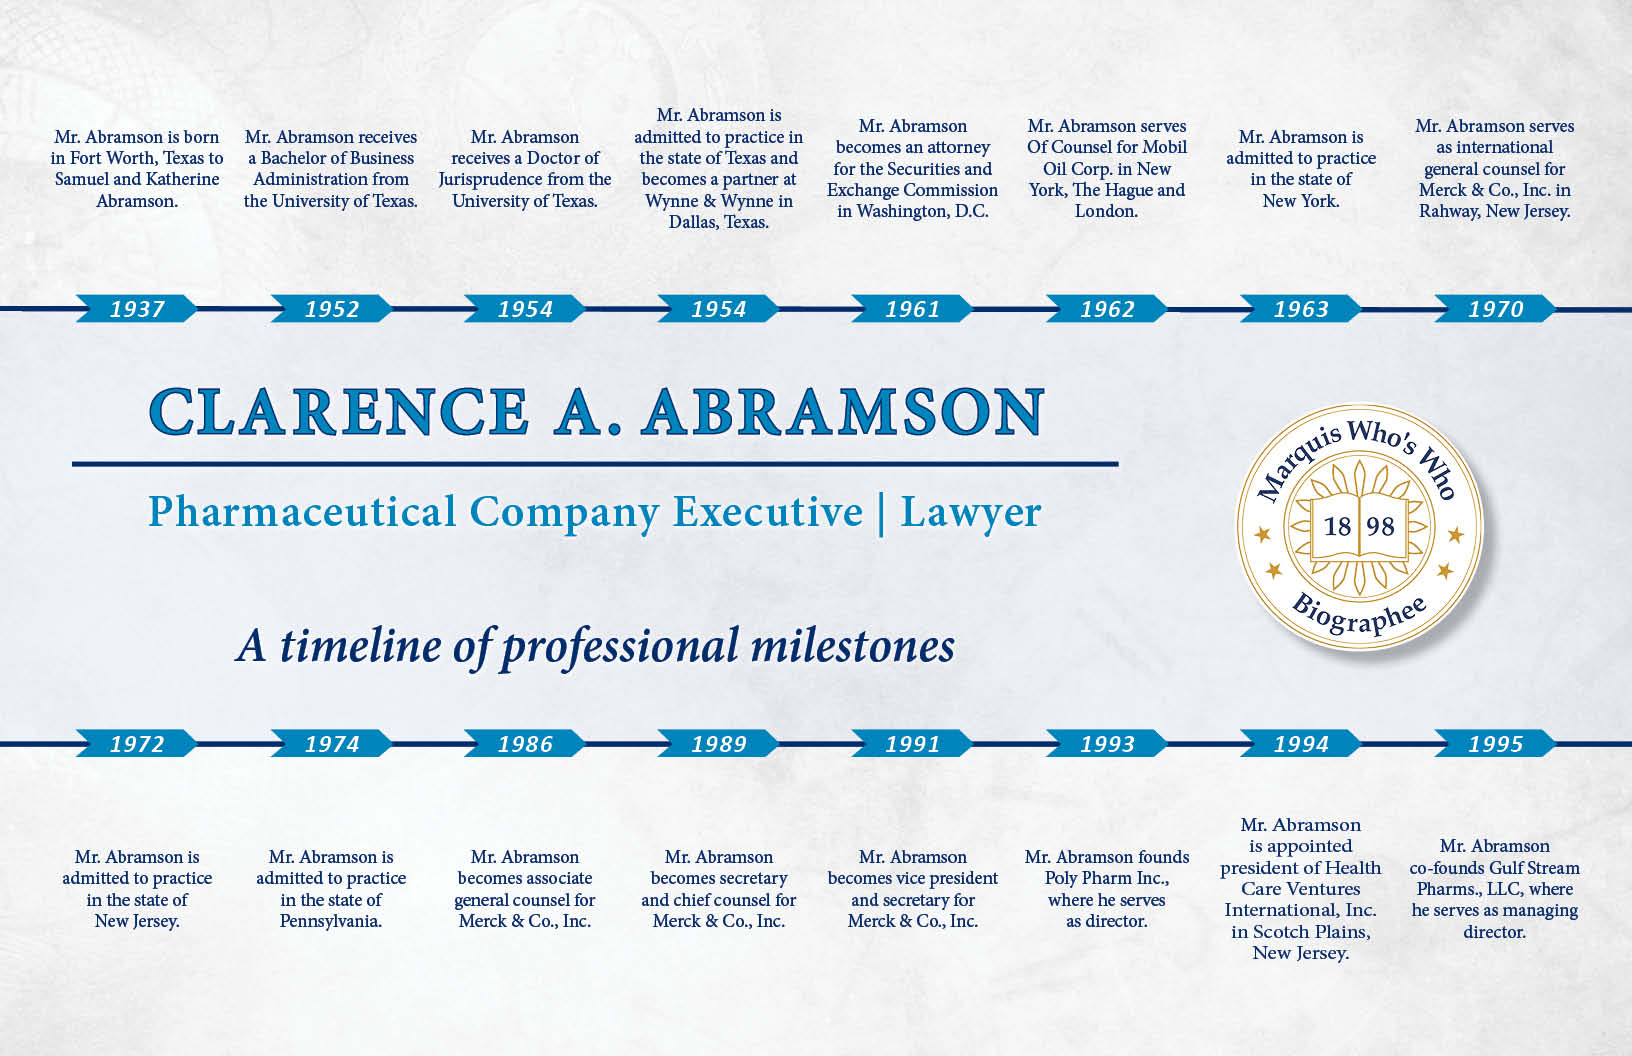 Clarence Abramson Professional Milestones